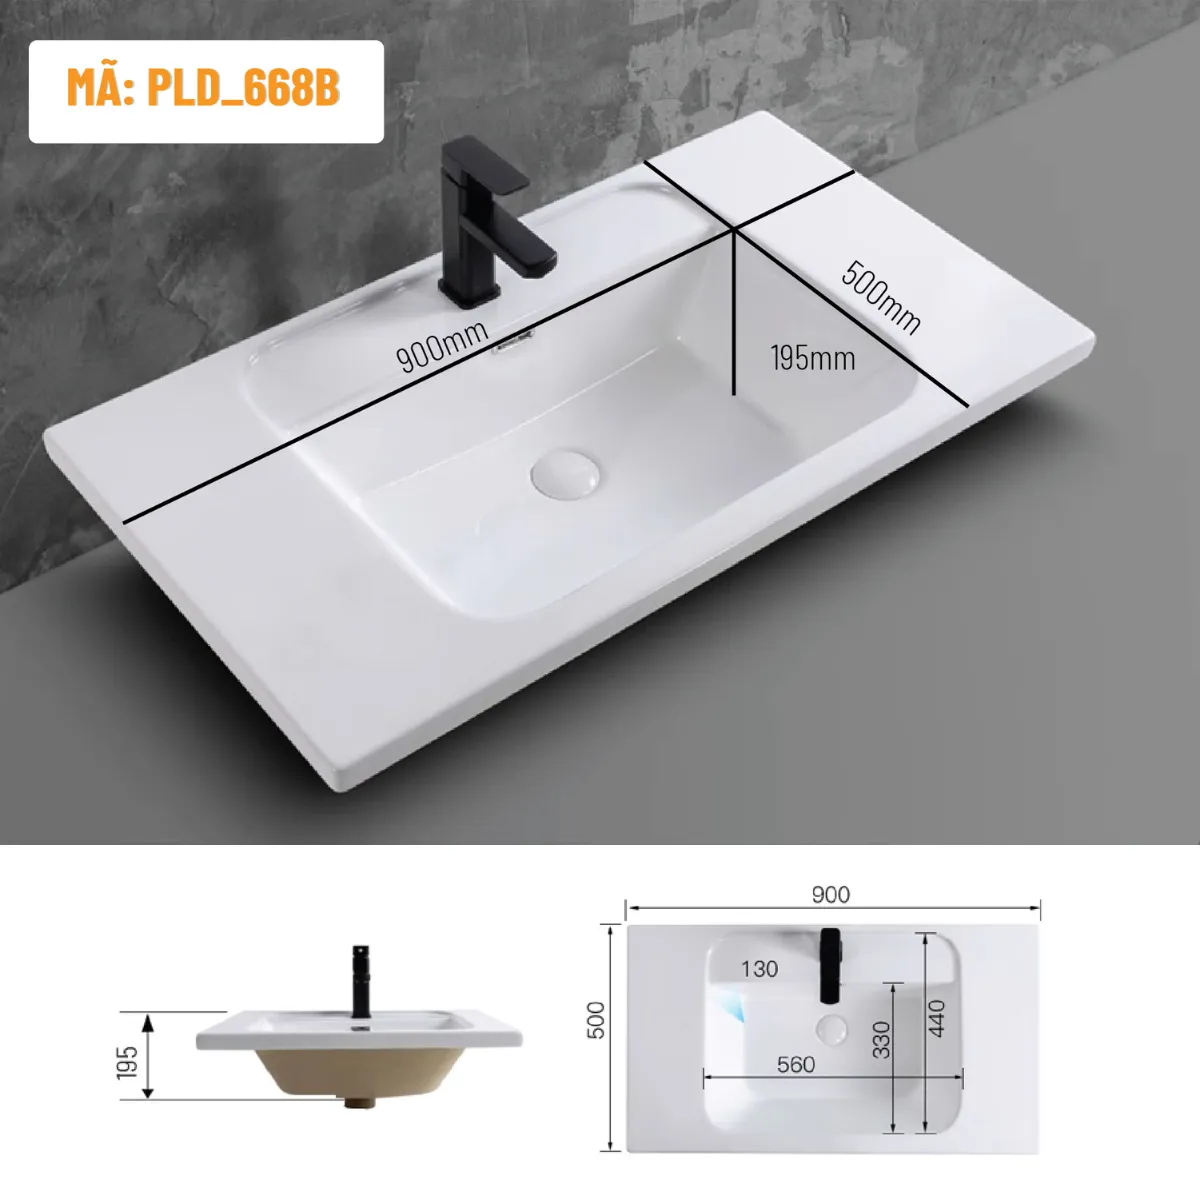 Sự hoàn hảo trong chi tiết: Chậu rửa lavabo âm bàn PLD-668B tạo điểm nhấn sang trọng cho phòng tắm bạn.